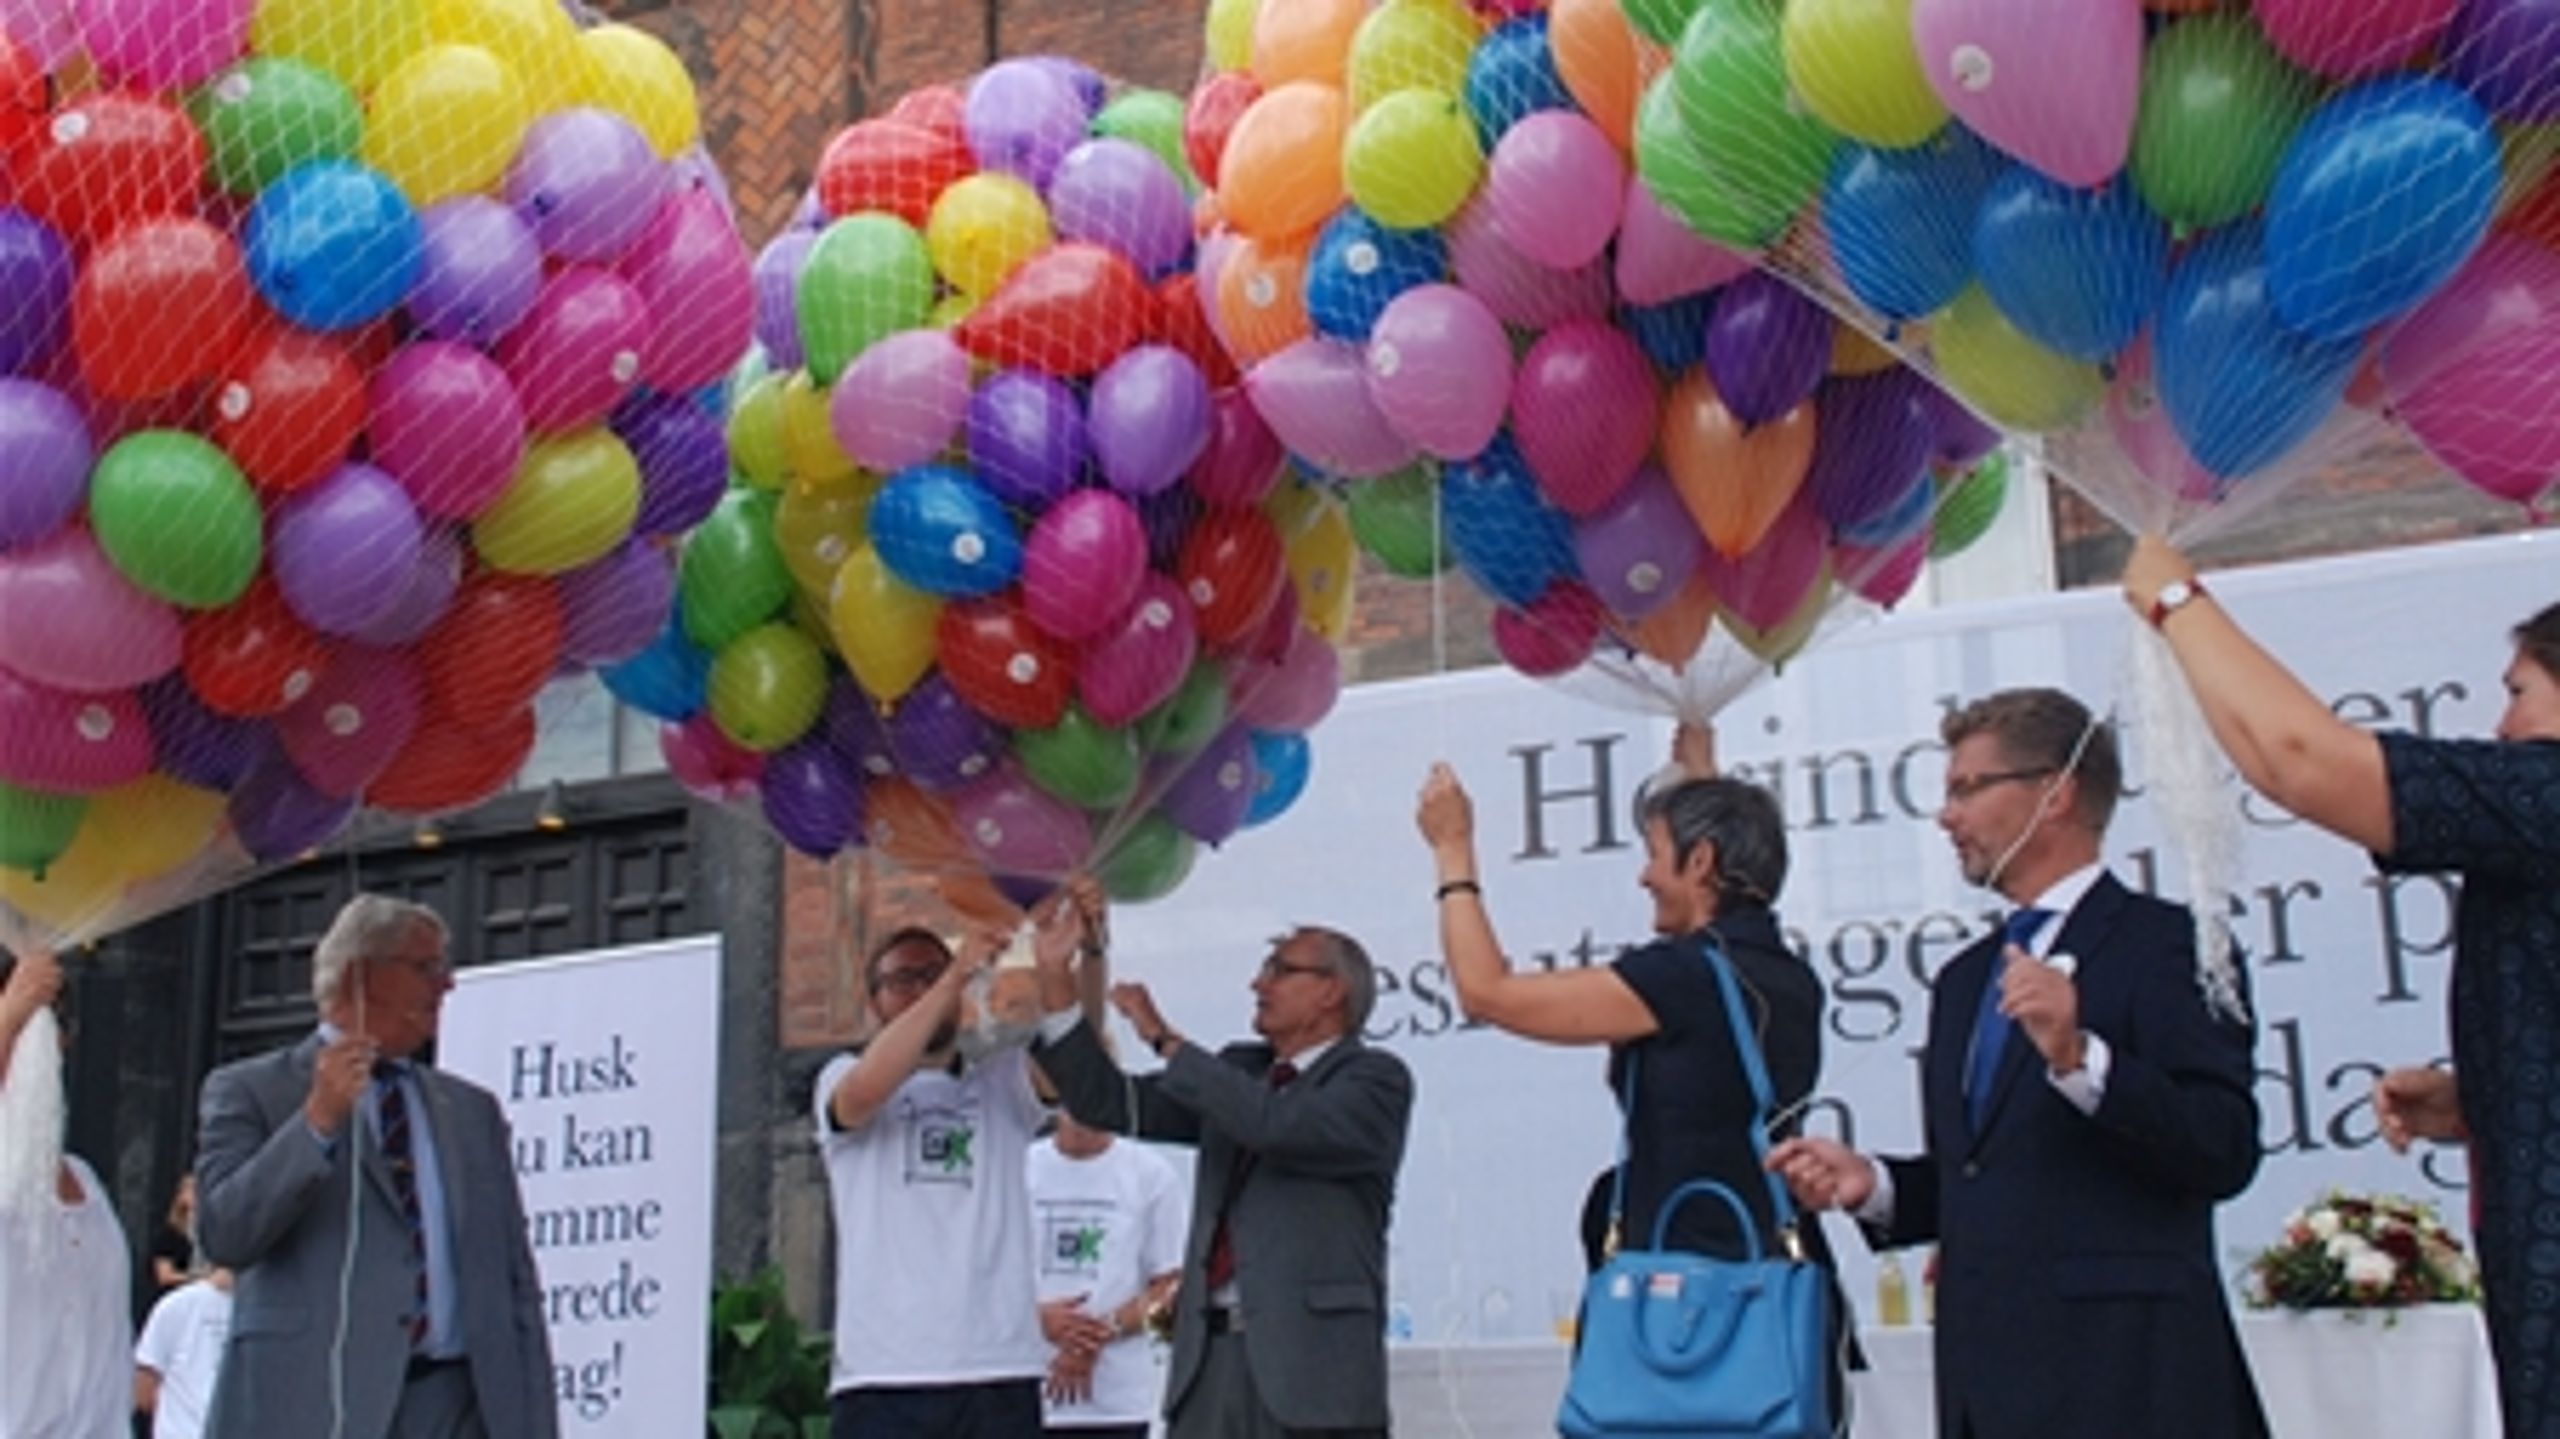 Kampagnen for at hæve valgdeltagelsen ved kommunalvalget blev kickstartet med balloner.